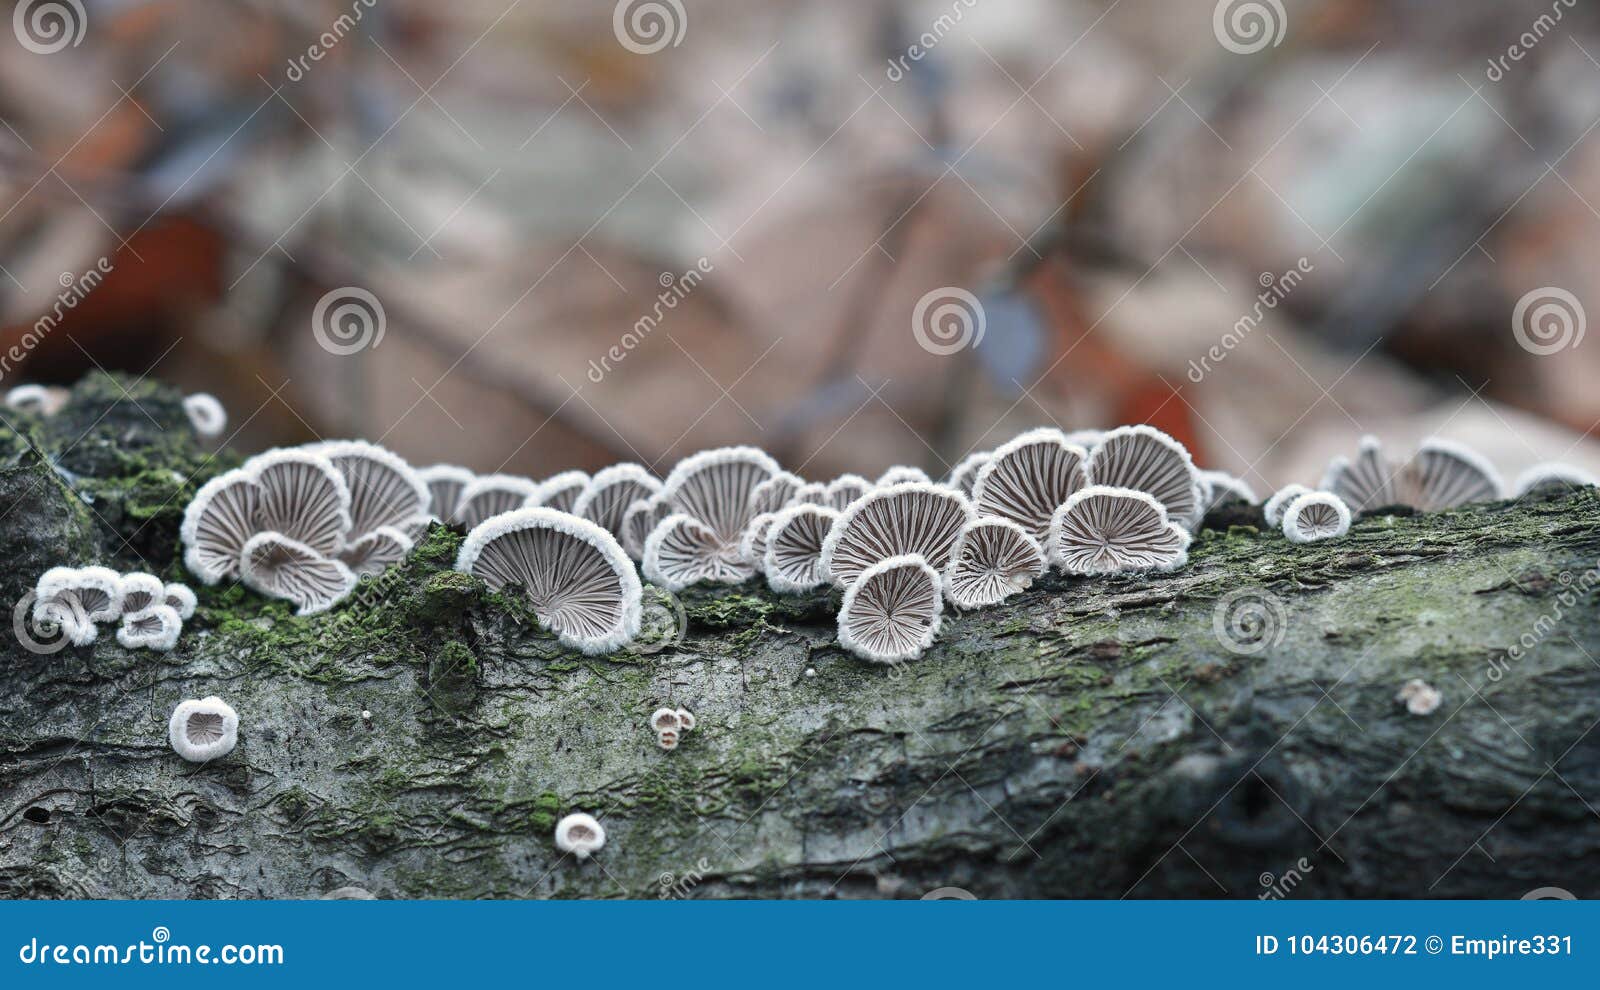 schizophyllum commune fungus